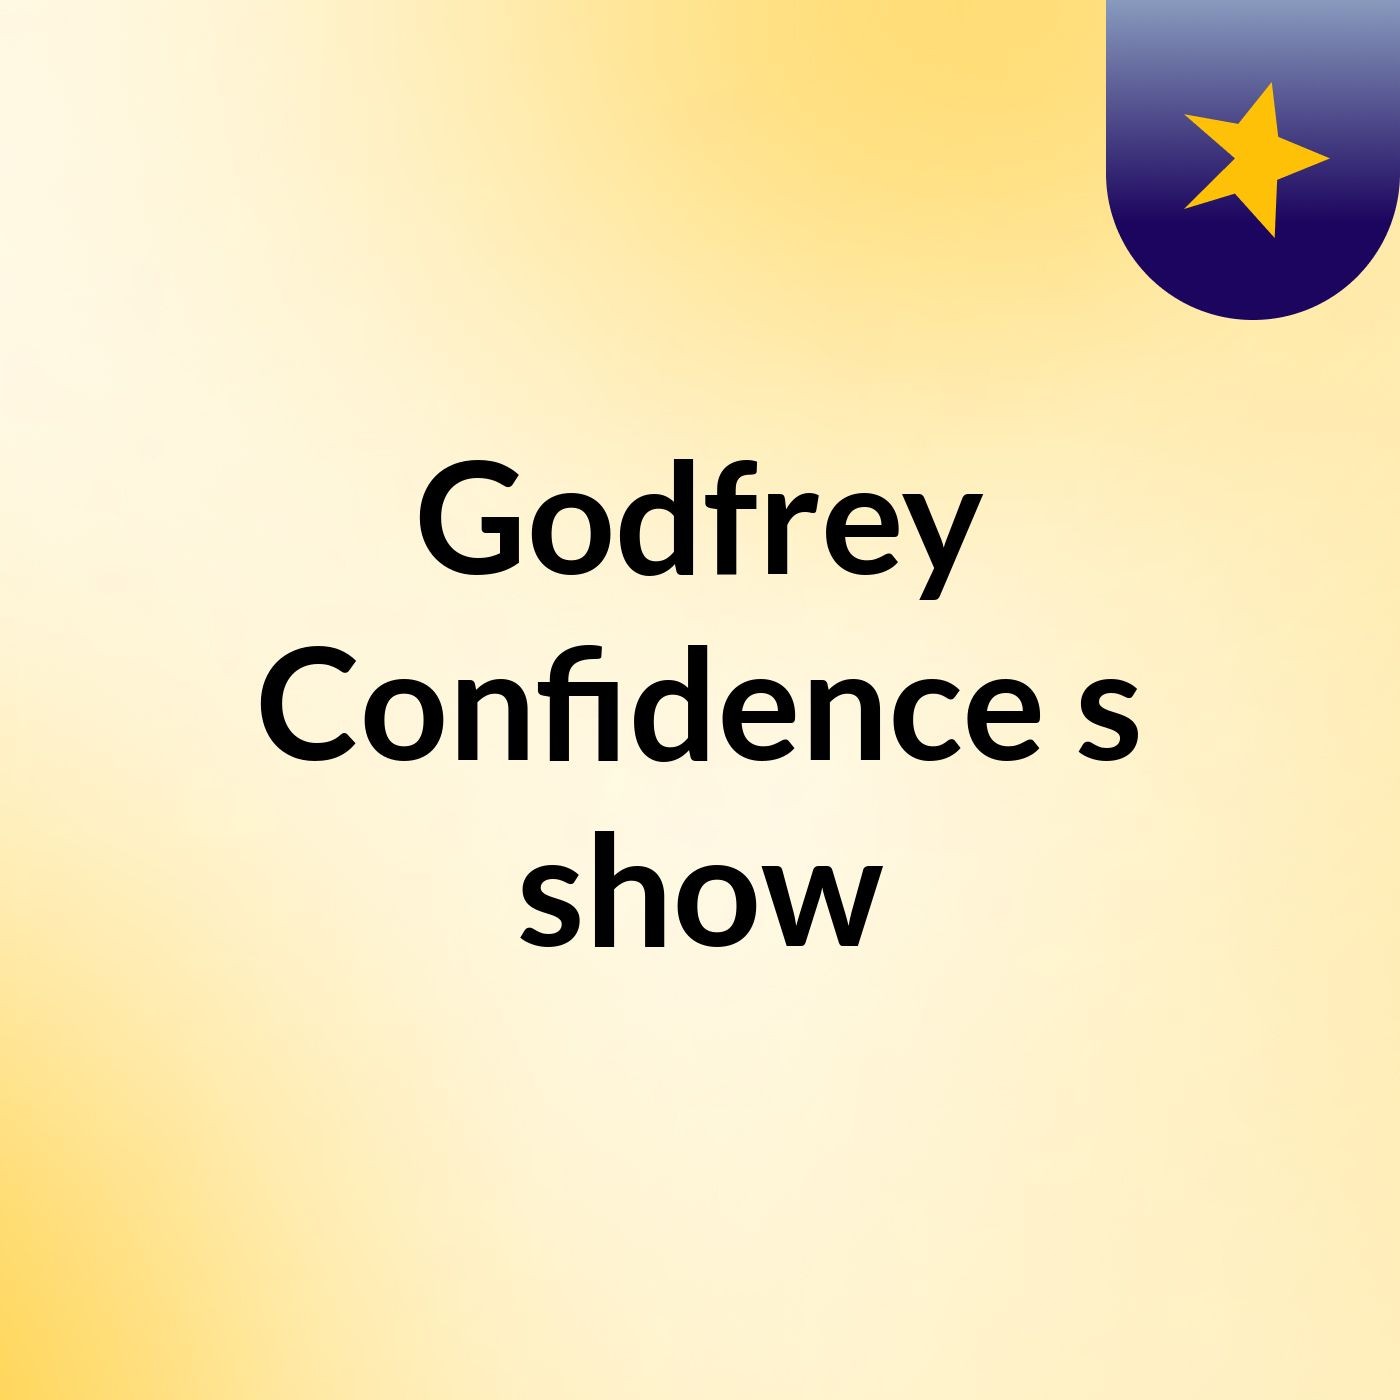 Godfrey Confidence's show